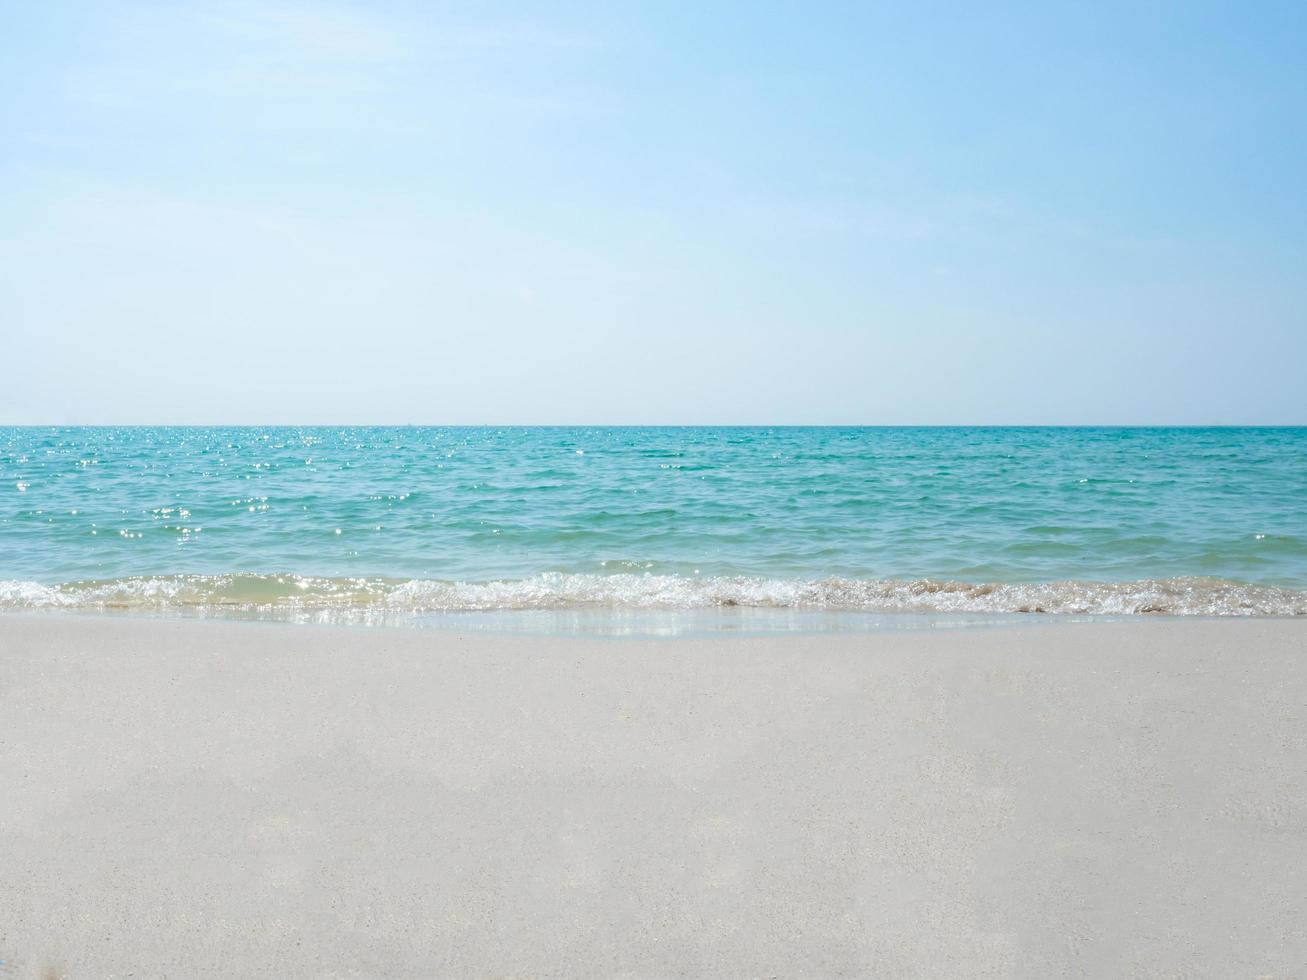 areia e onda de água do mar na praia no oceano azul paisagem de céu azul, conceito de bolha de onda de água do mar belo oceano com luz solar foto